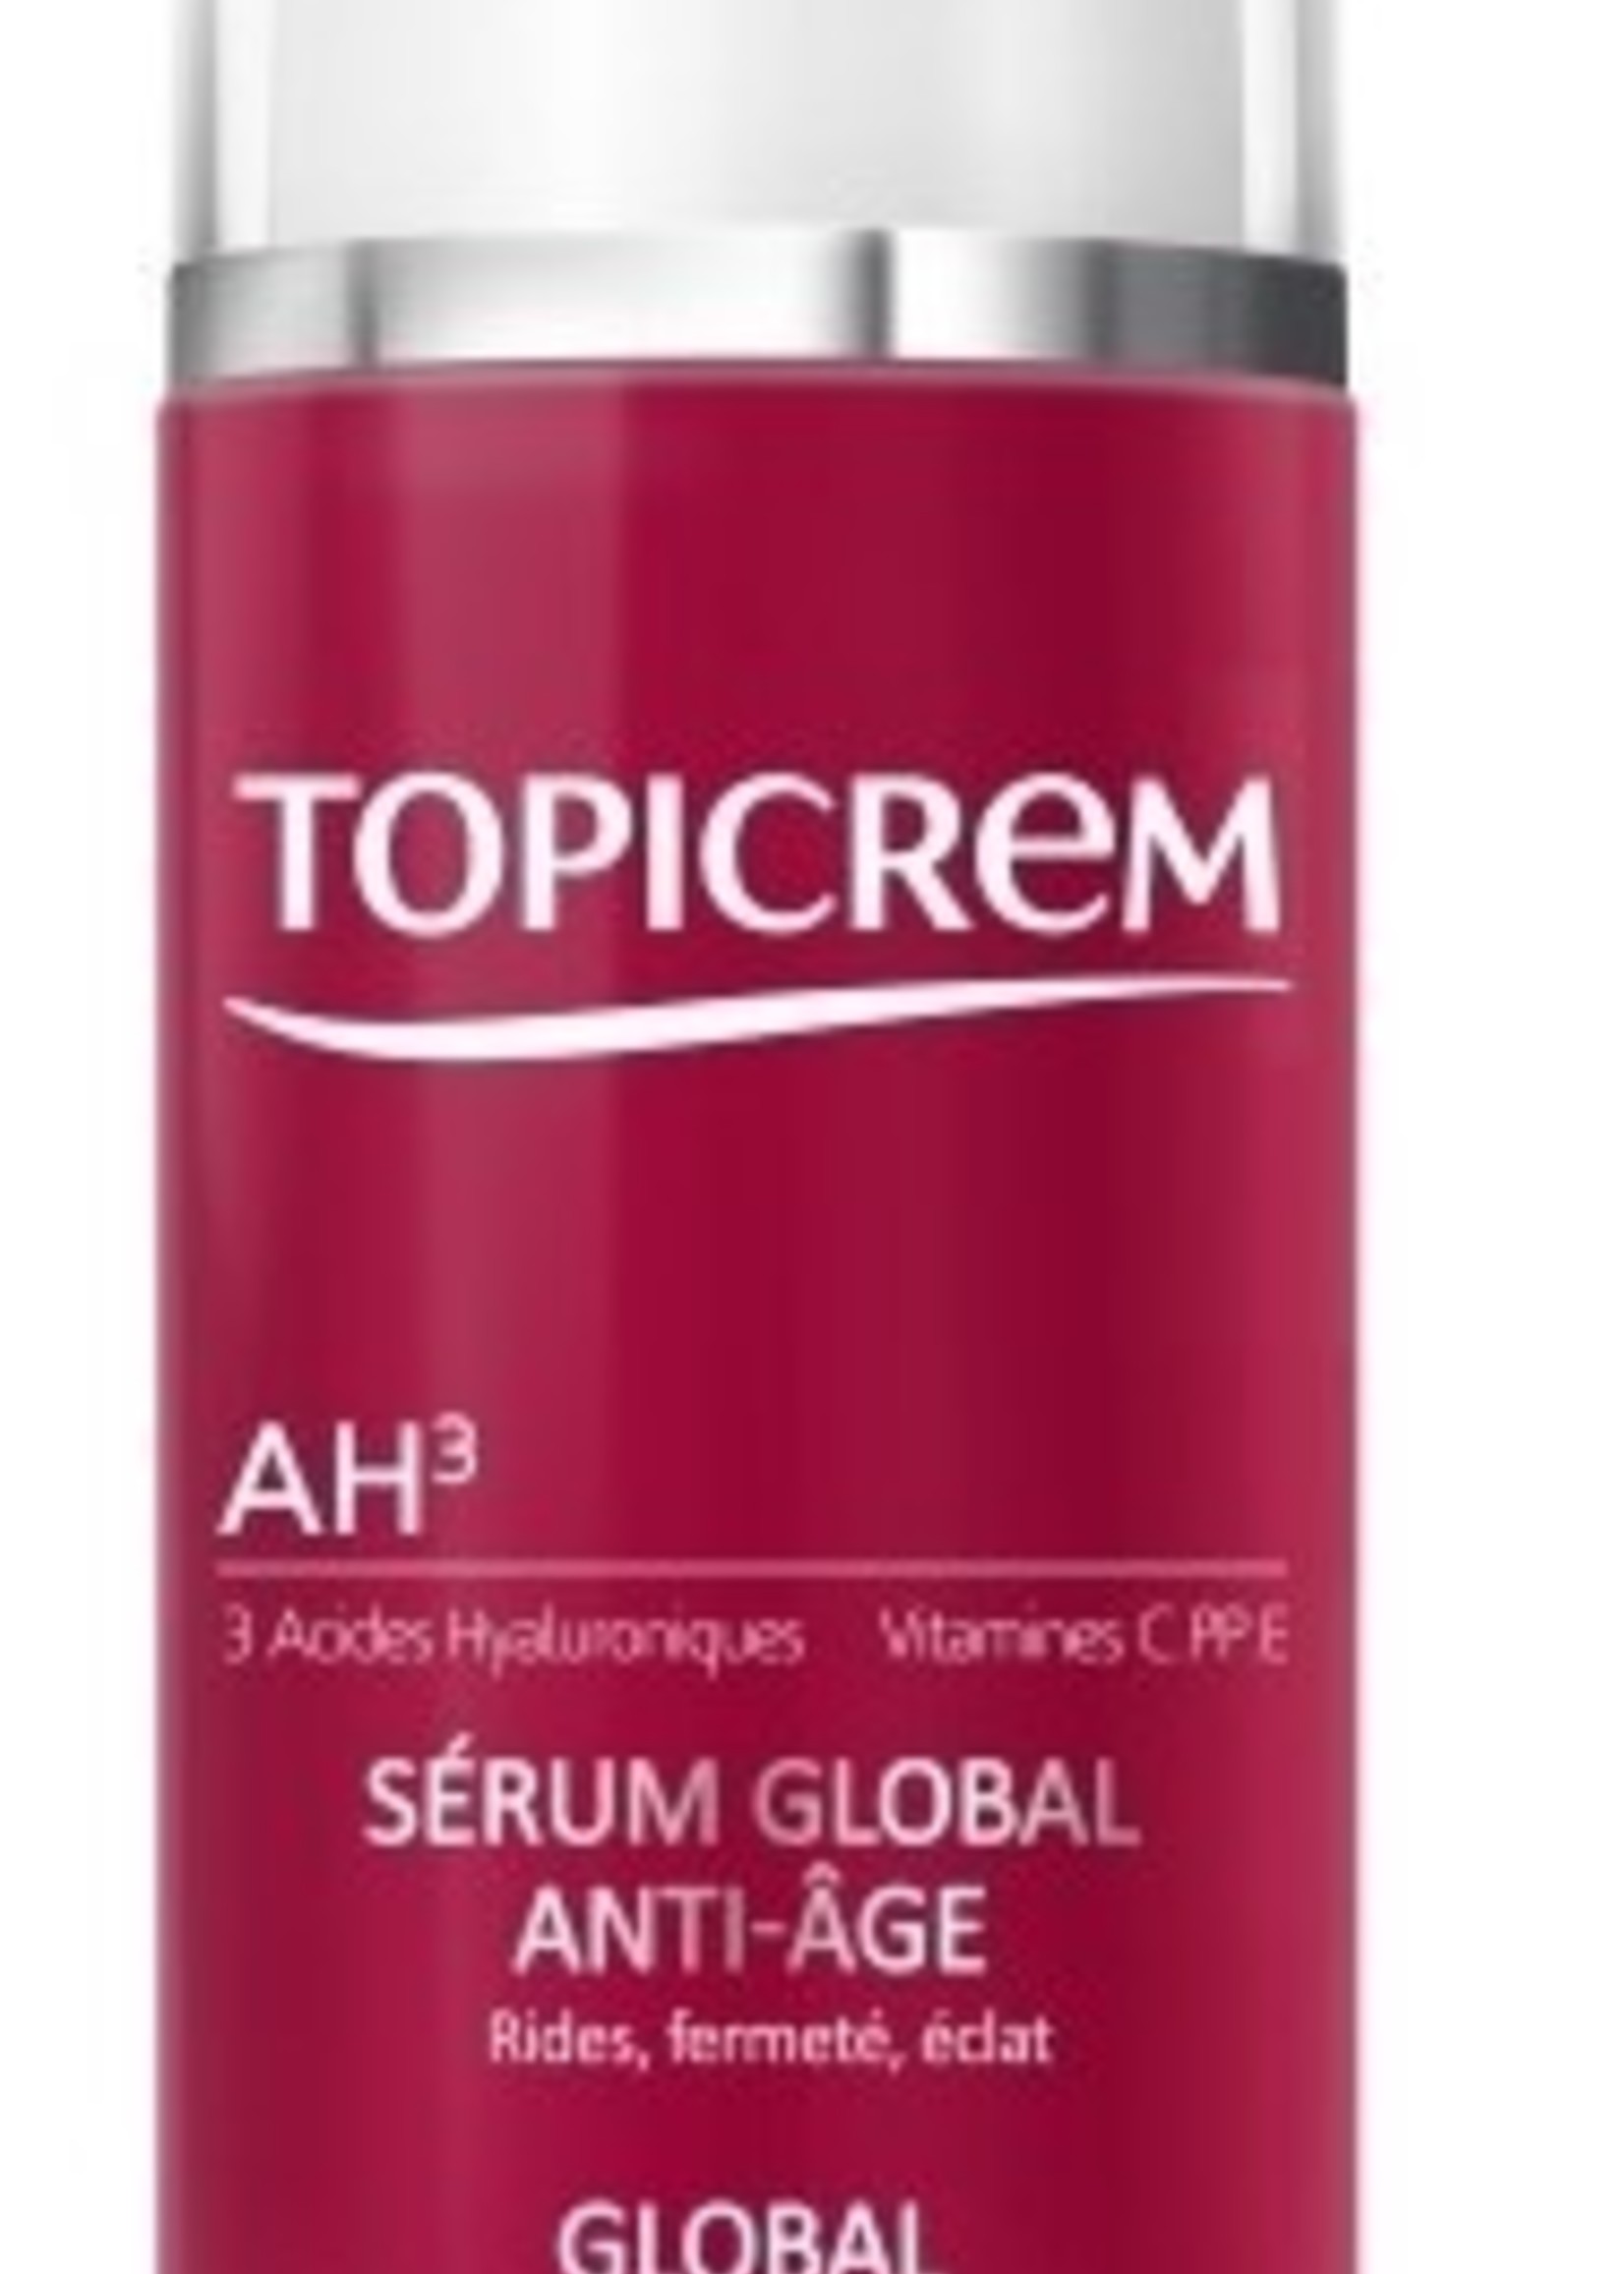 Topicrem Global Anti-aging Serum